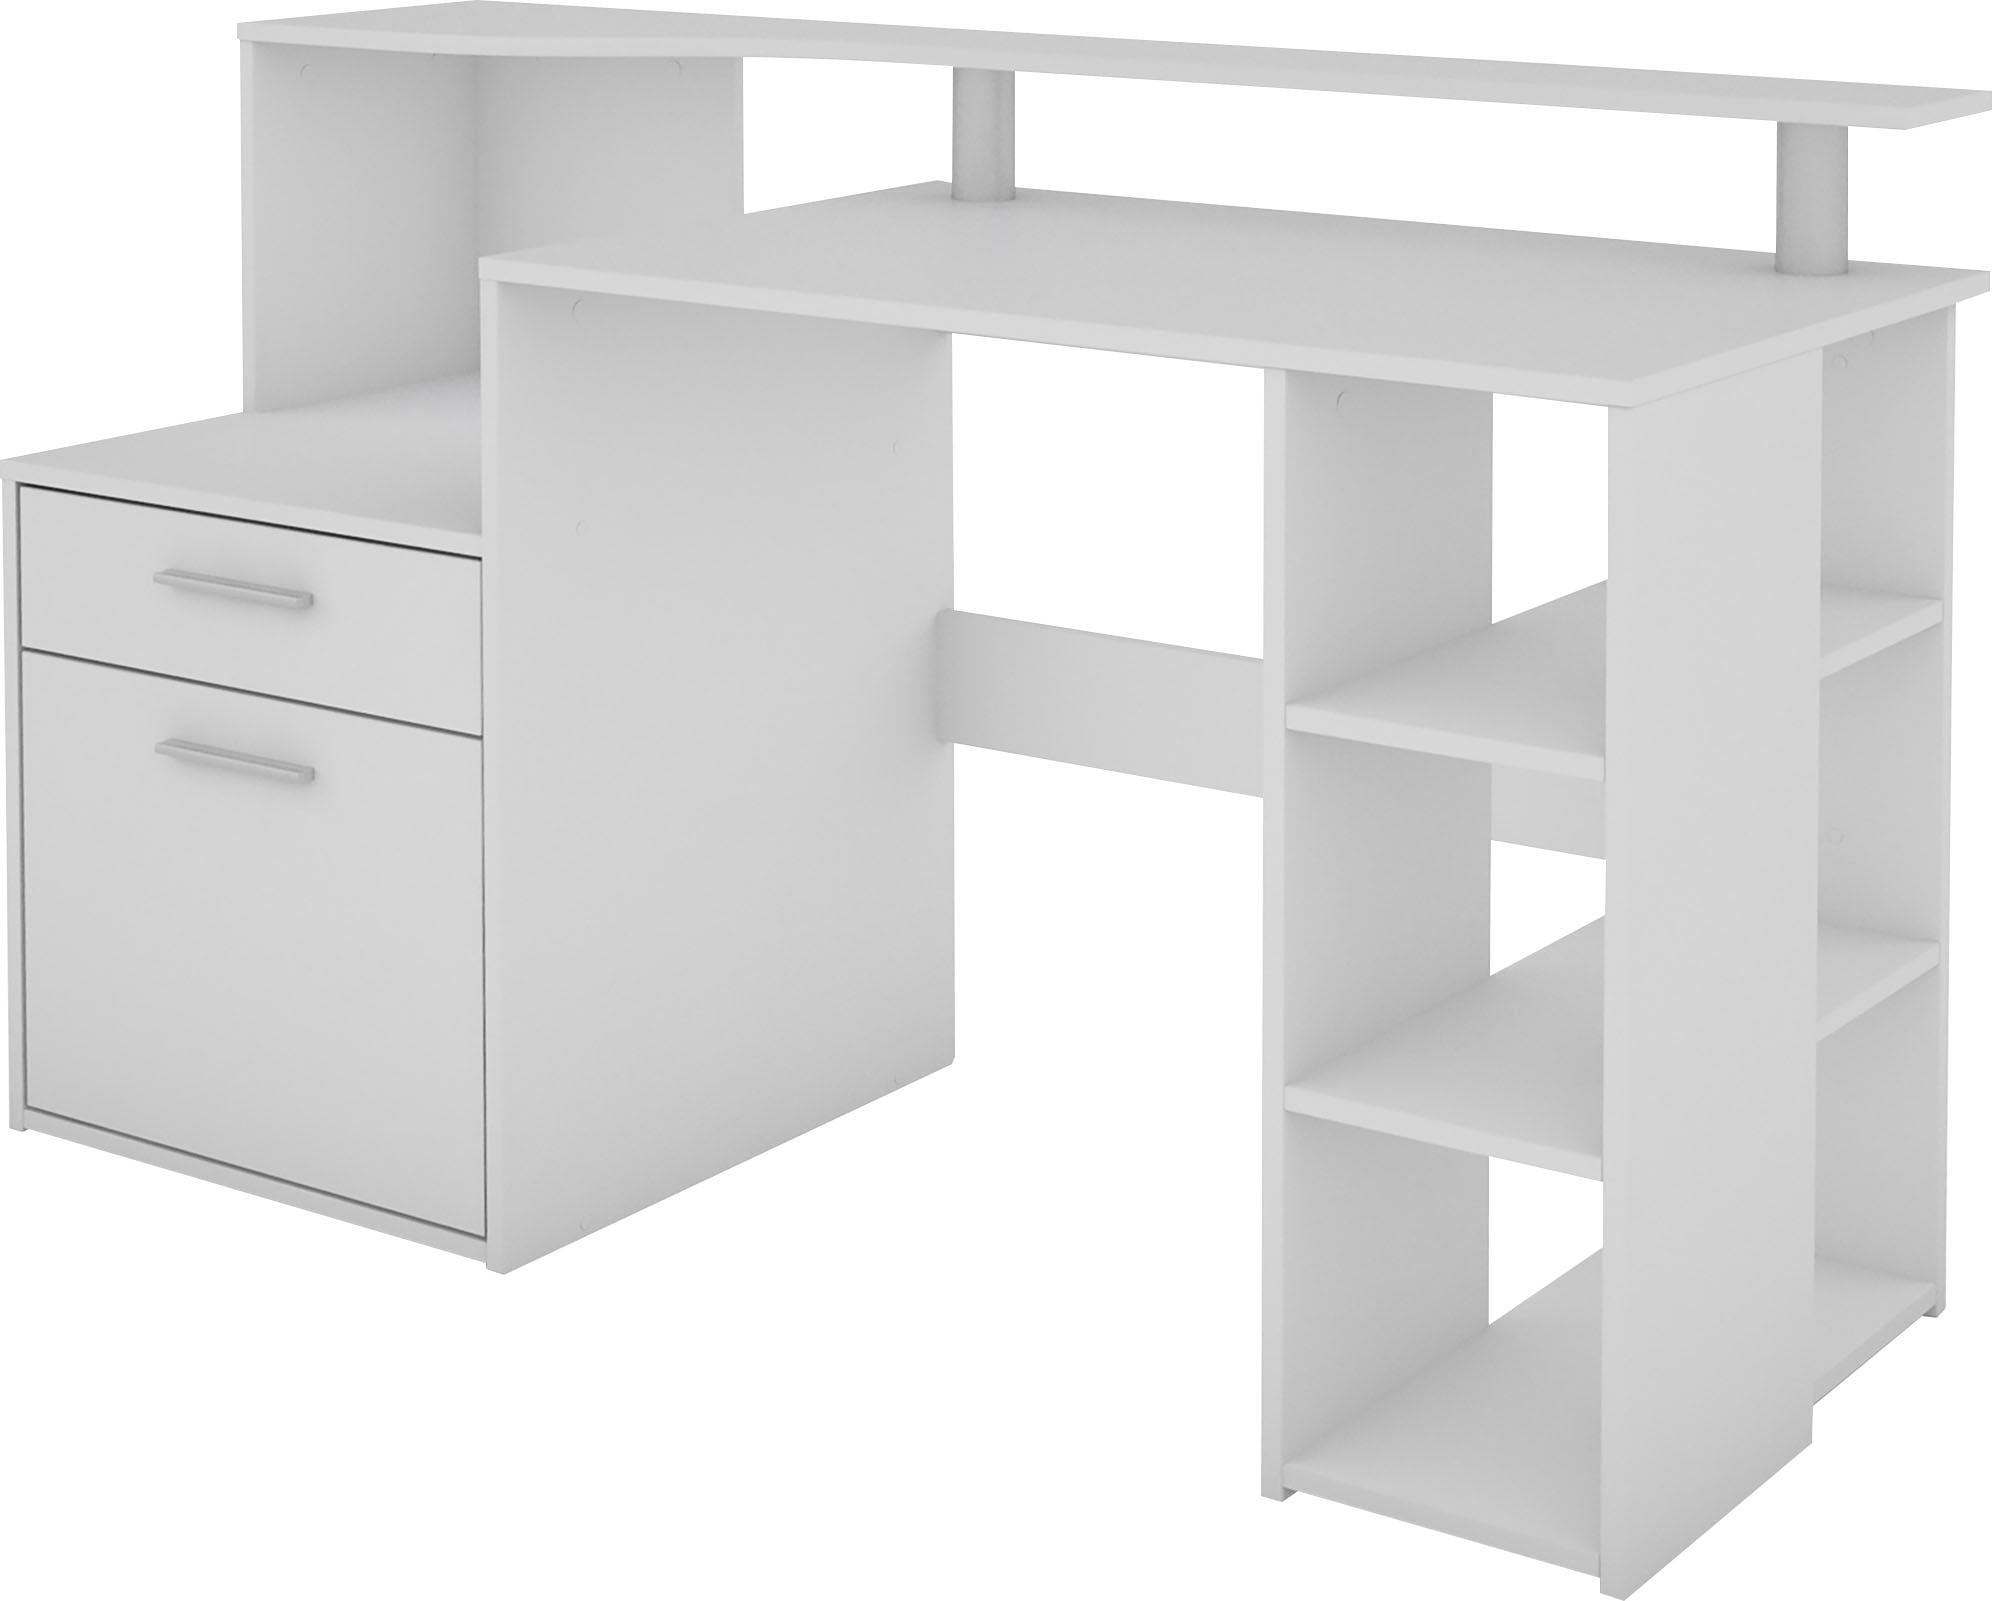 byLIVING Schreibtisch »Louise«, Breite 140 cm, Regal-Schreibtisch mit viel Stauraum